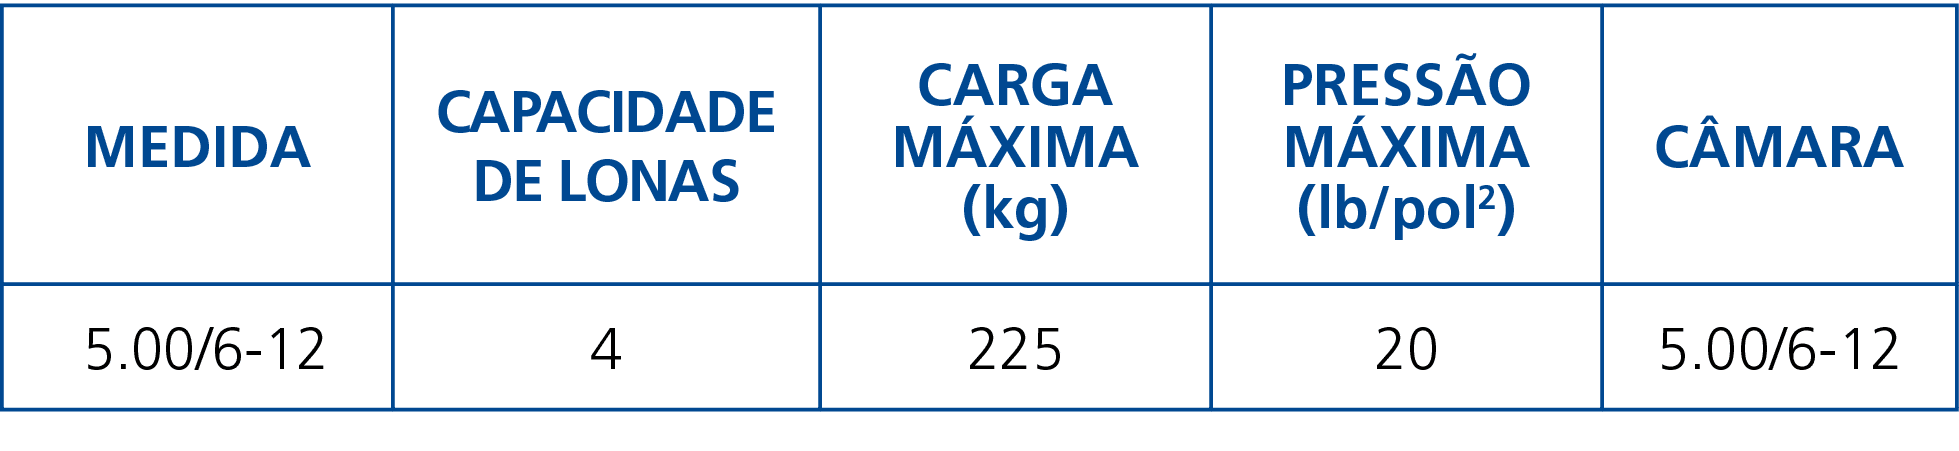 Medida,Capacidade de Lonas,Carga Máxima (kg),Pressão Máxima (lb pol2),Câmara, 5 00 6-12 ,4,225,20,5 00 6-12